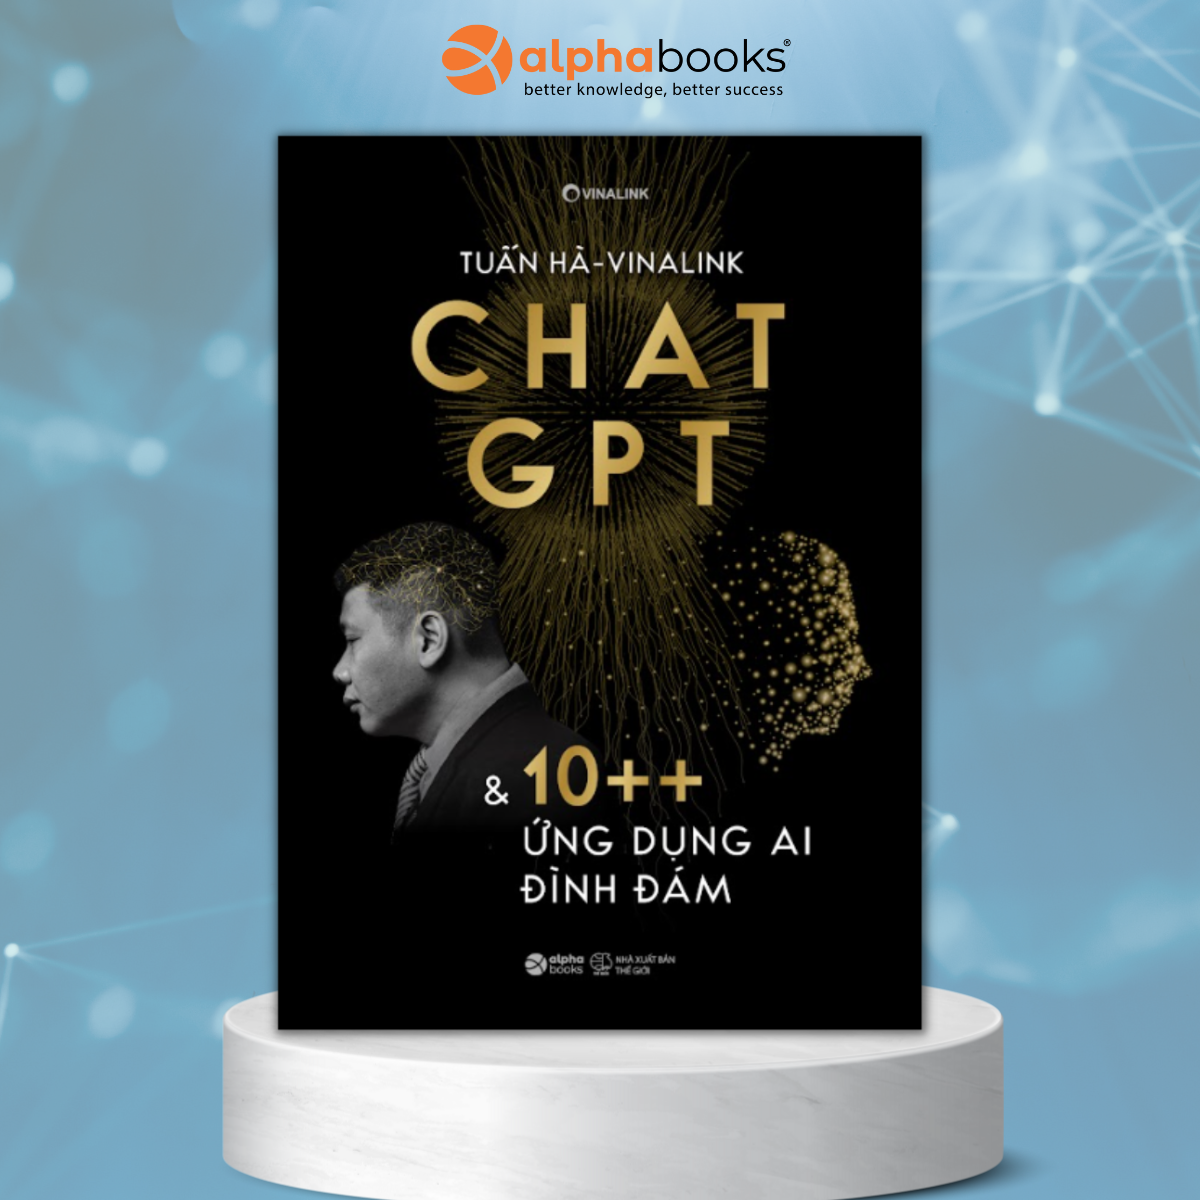 Chat GPT &amp; 10++ Ứng Dụng AI Đình Đám (Tuấn Hà - Vinalink)